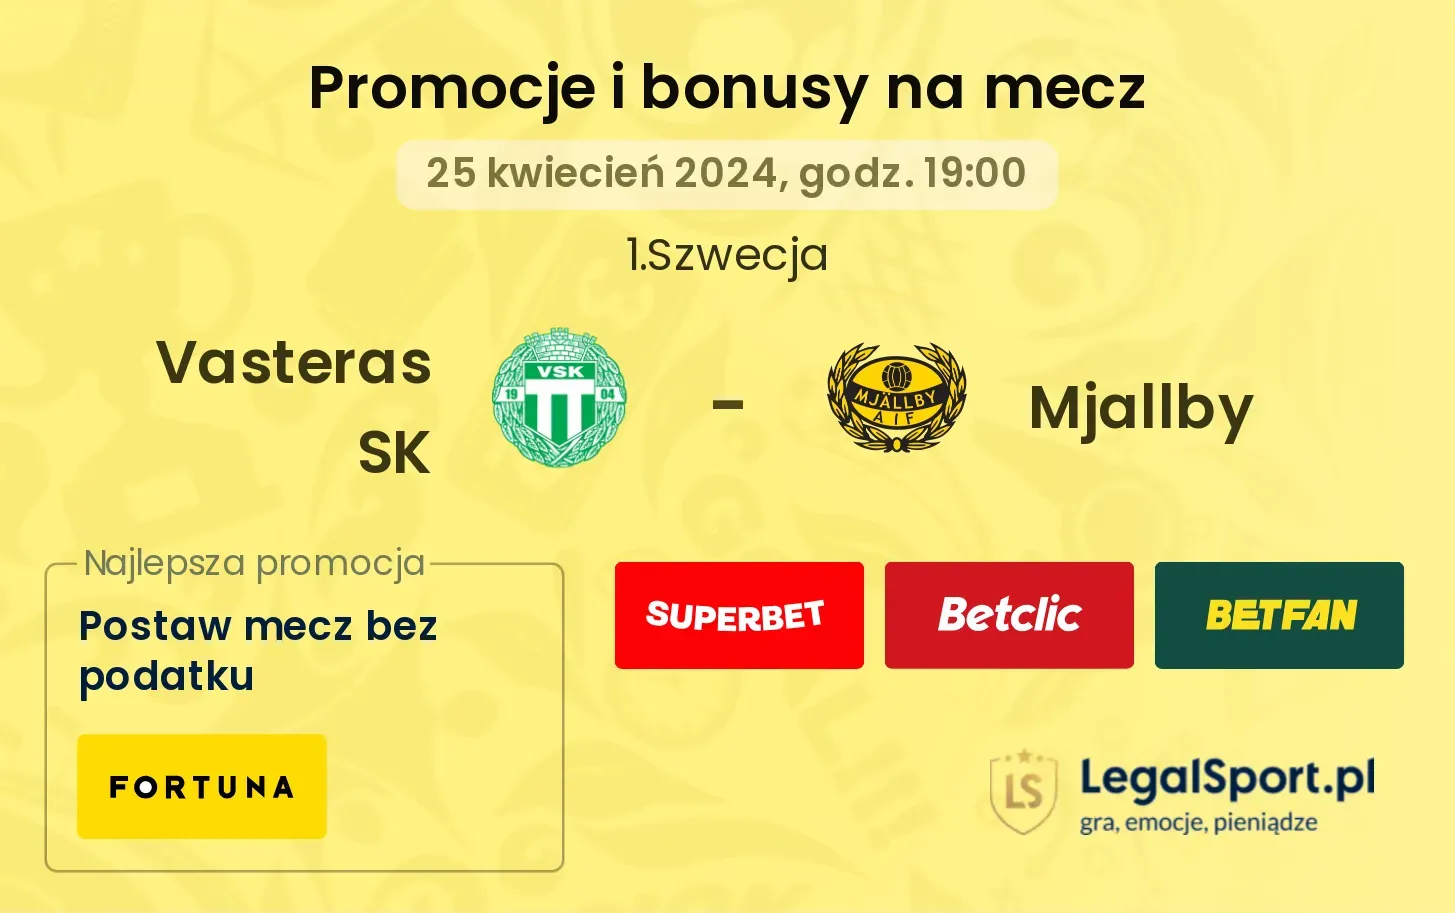 Vasteras SK - Mjallby promocje bonusy na mecz